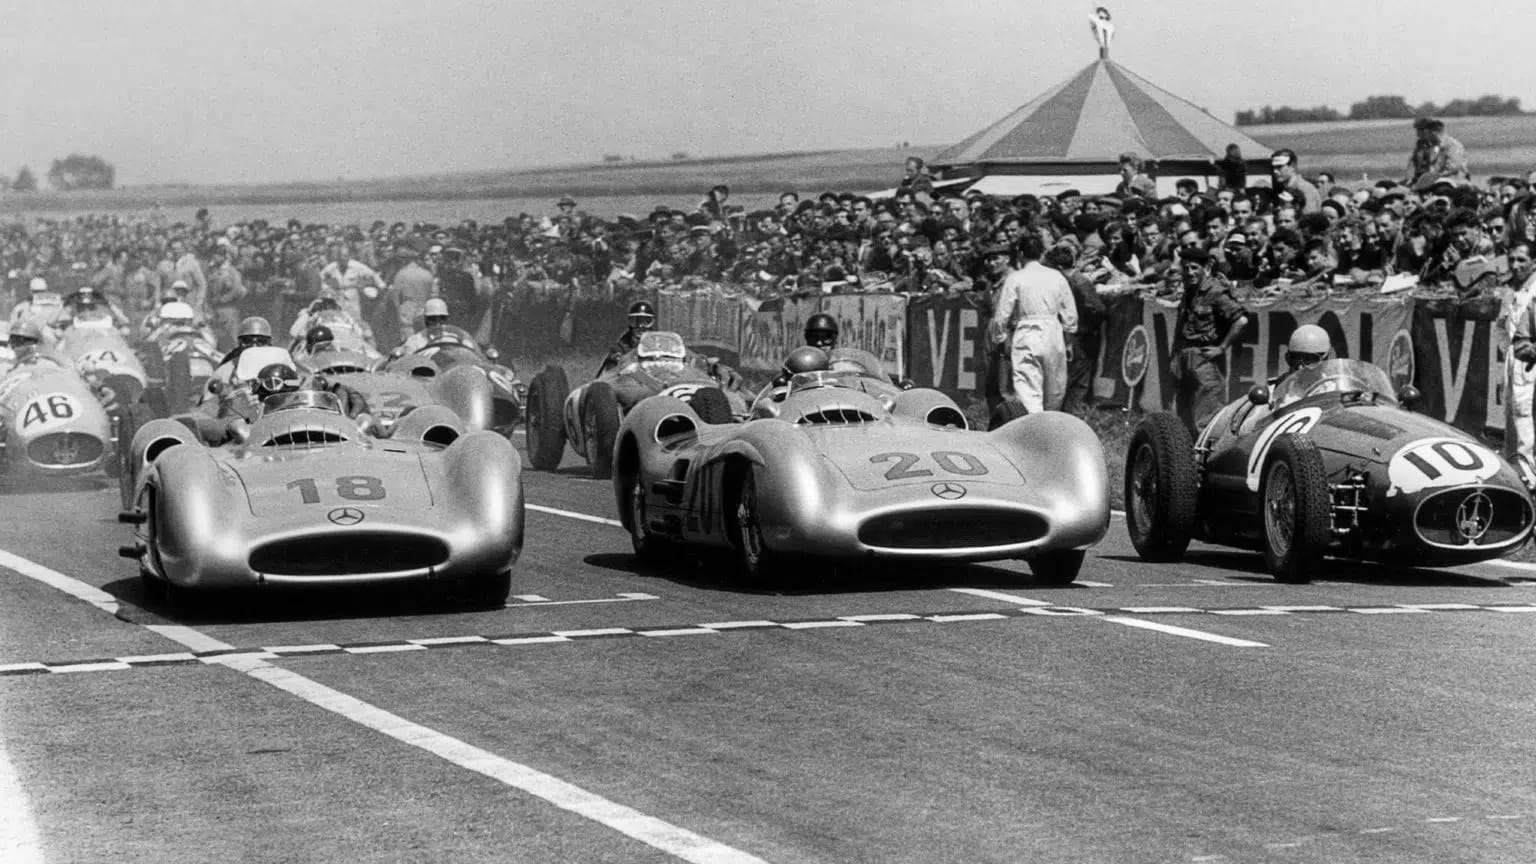 Grand Prix de France 1954 puzzle en ligne à partir d'une photo